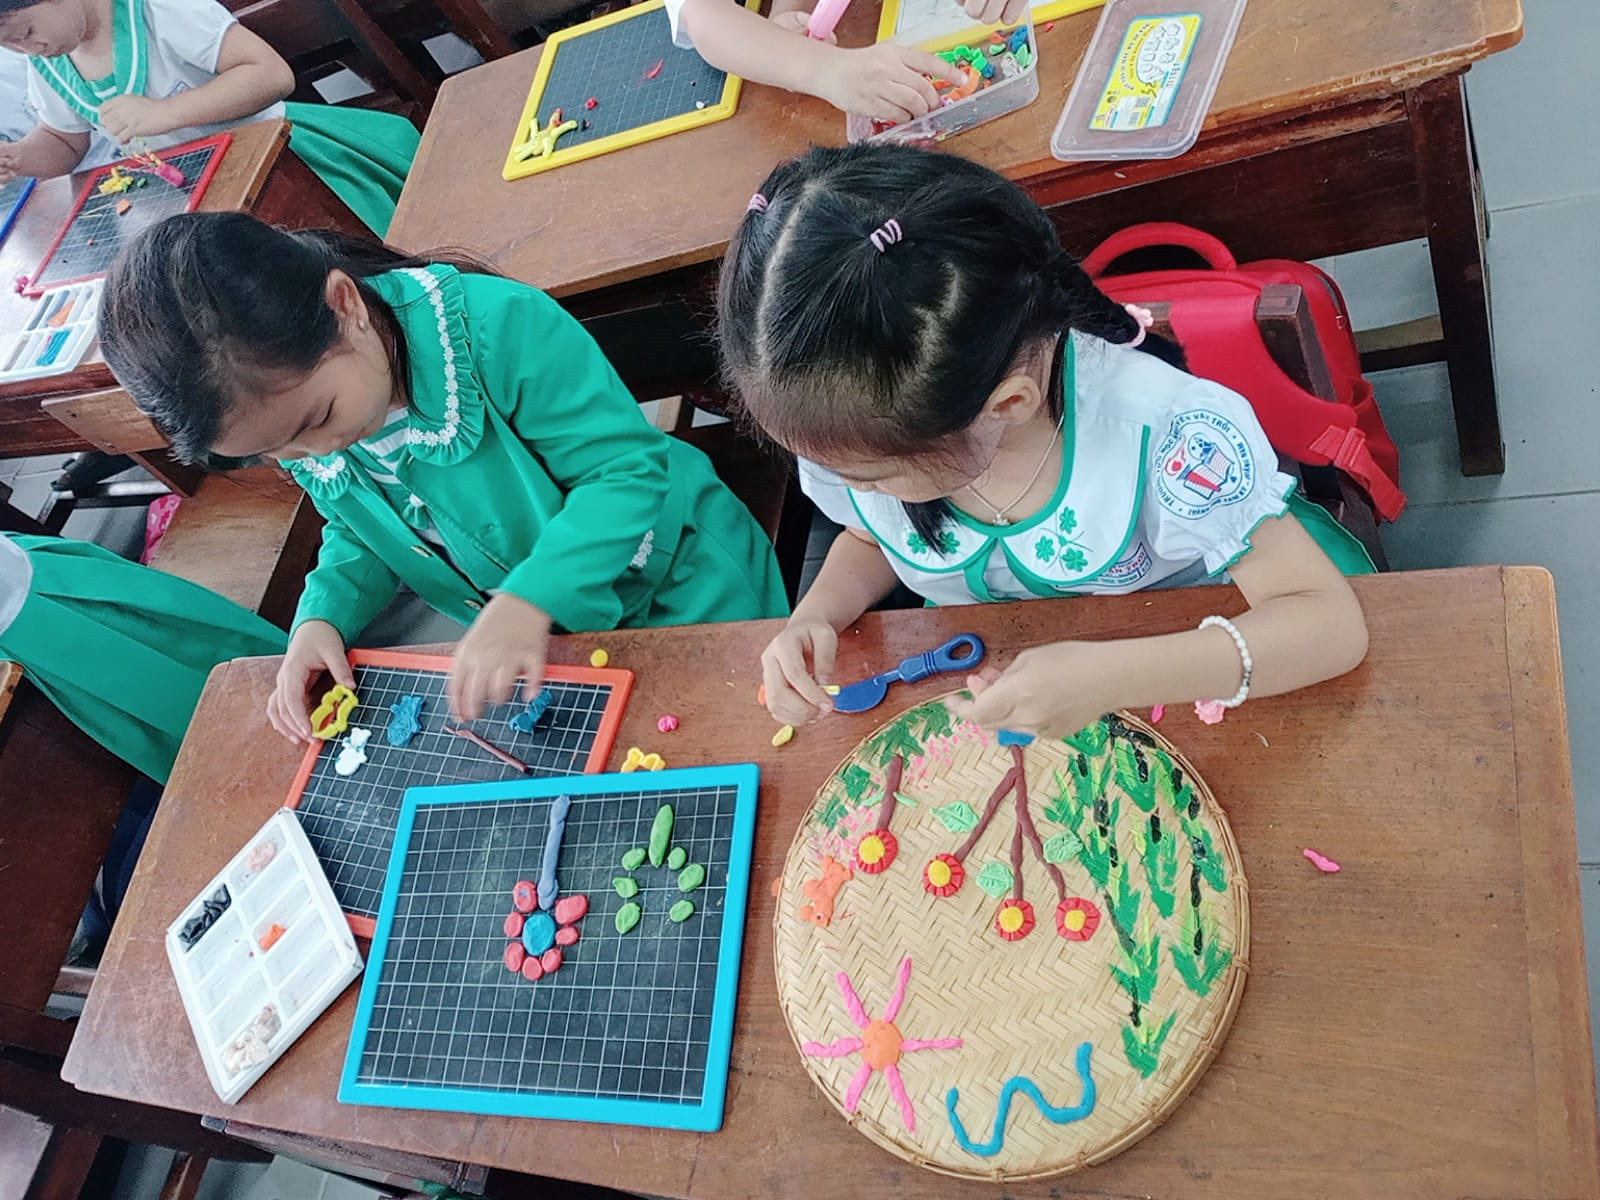 Học sinh Trường Tiểu học Nguyễn Văn Trỗi tham gia trải nghiệm với chủ đề “Tri ân thầy cô giáo“. Ảnh: HOÀNG HIỀN.